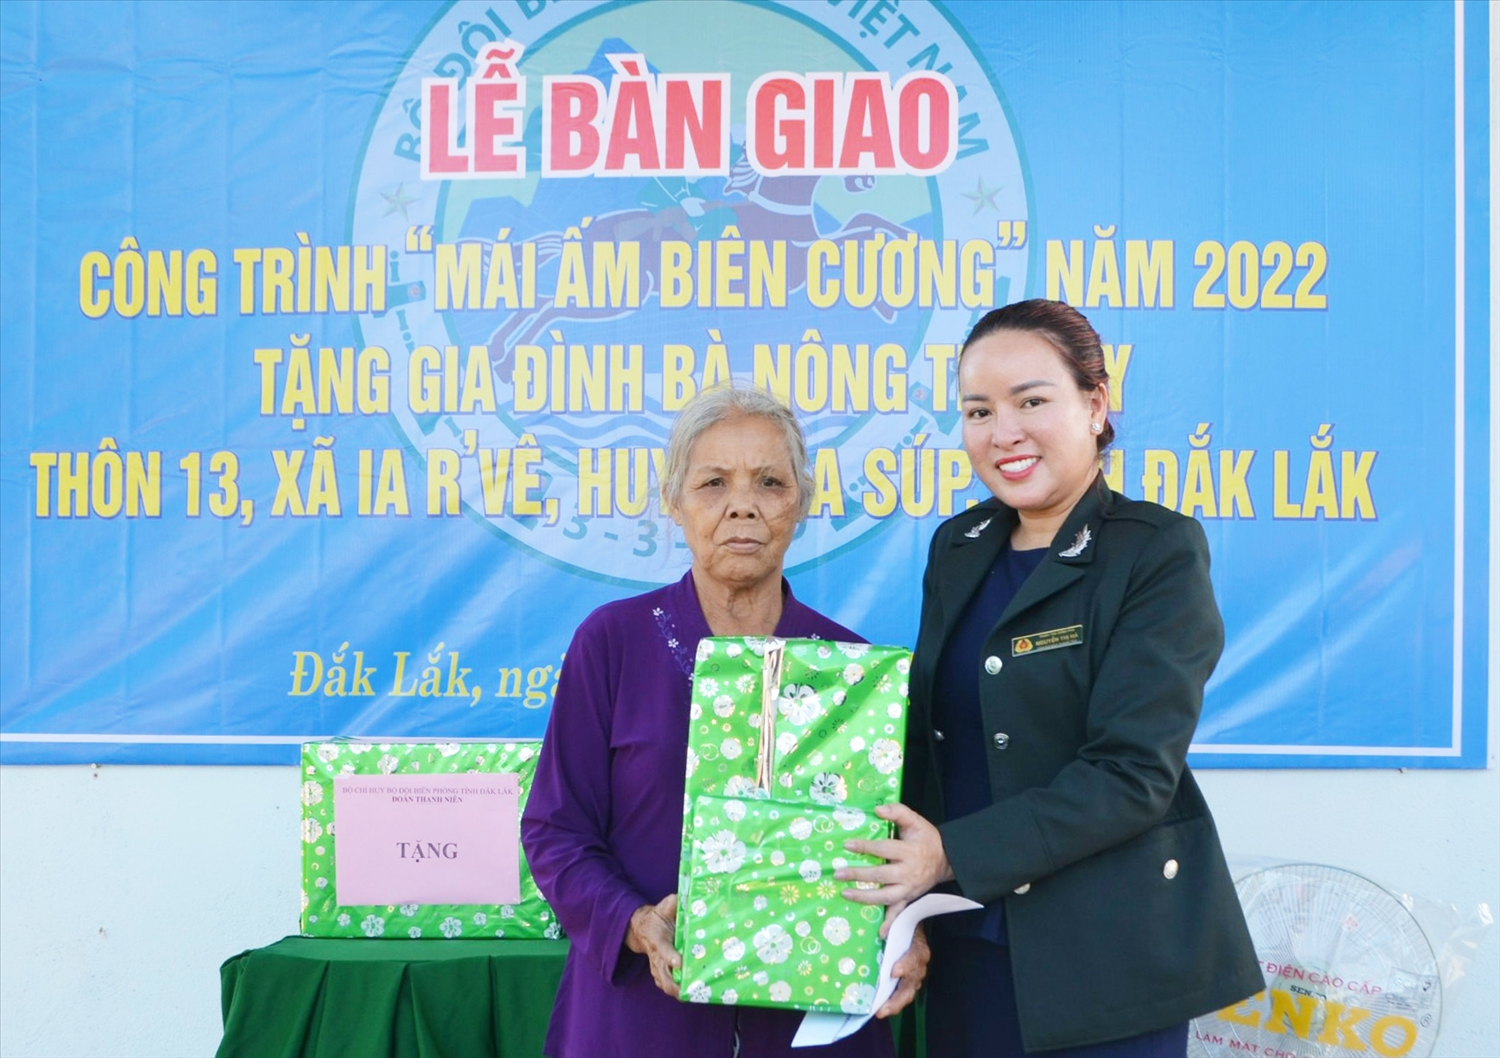 Đại diện Đoàn Thanh niên và Hội phụ nữ BĐBP tỉnh Đắk Lắk trao quà tặng gia đình bà Nông Thị Bay